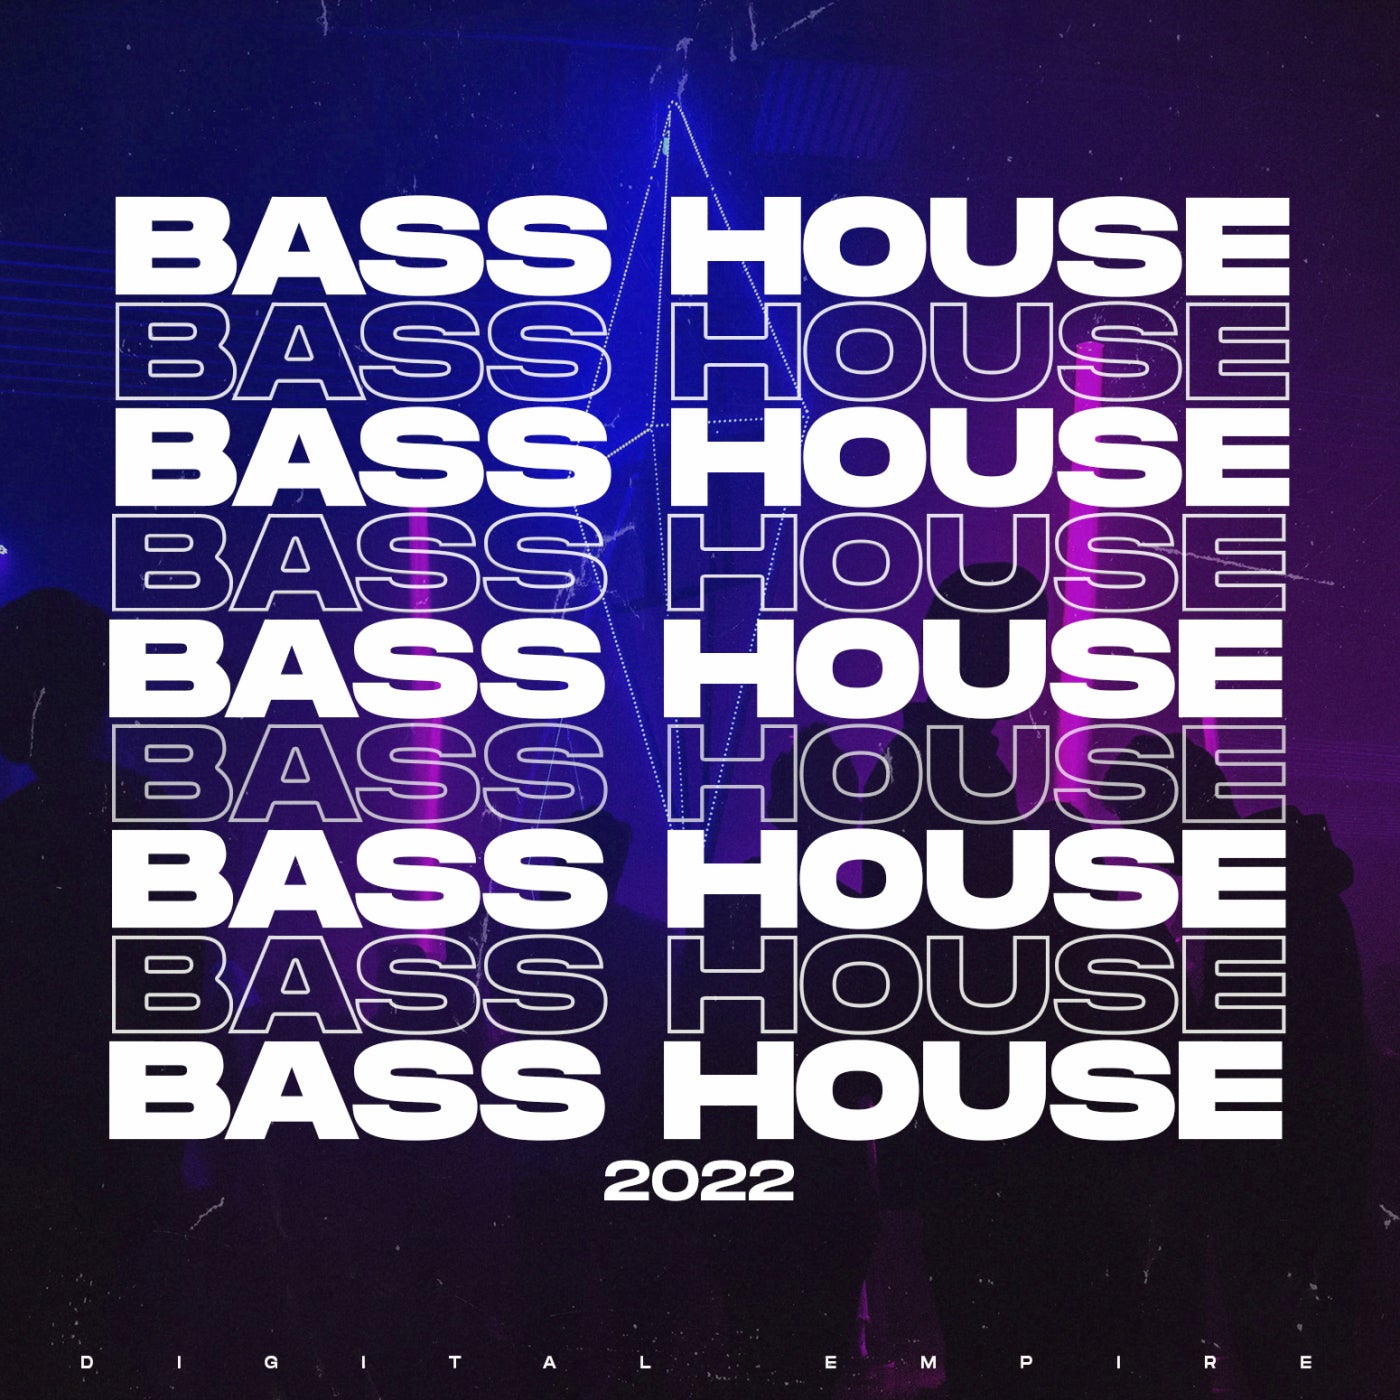 Bass House 2022